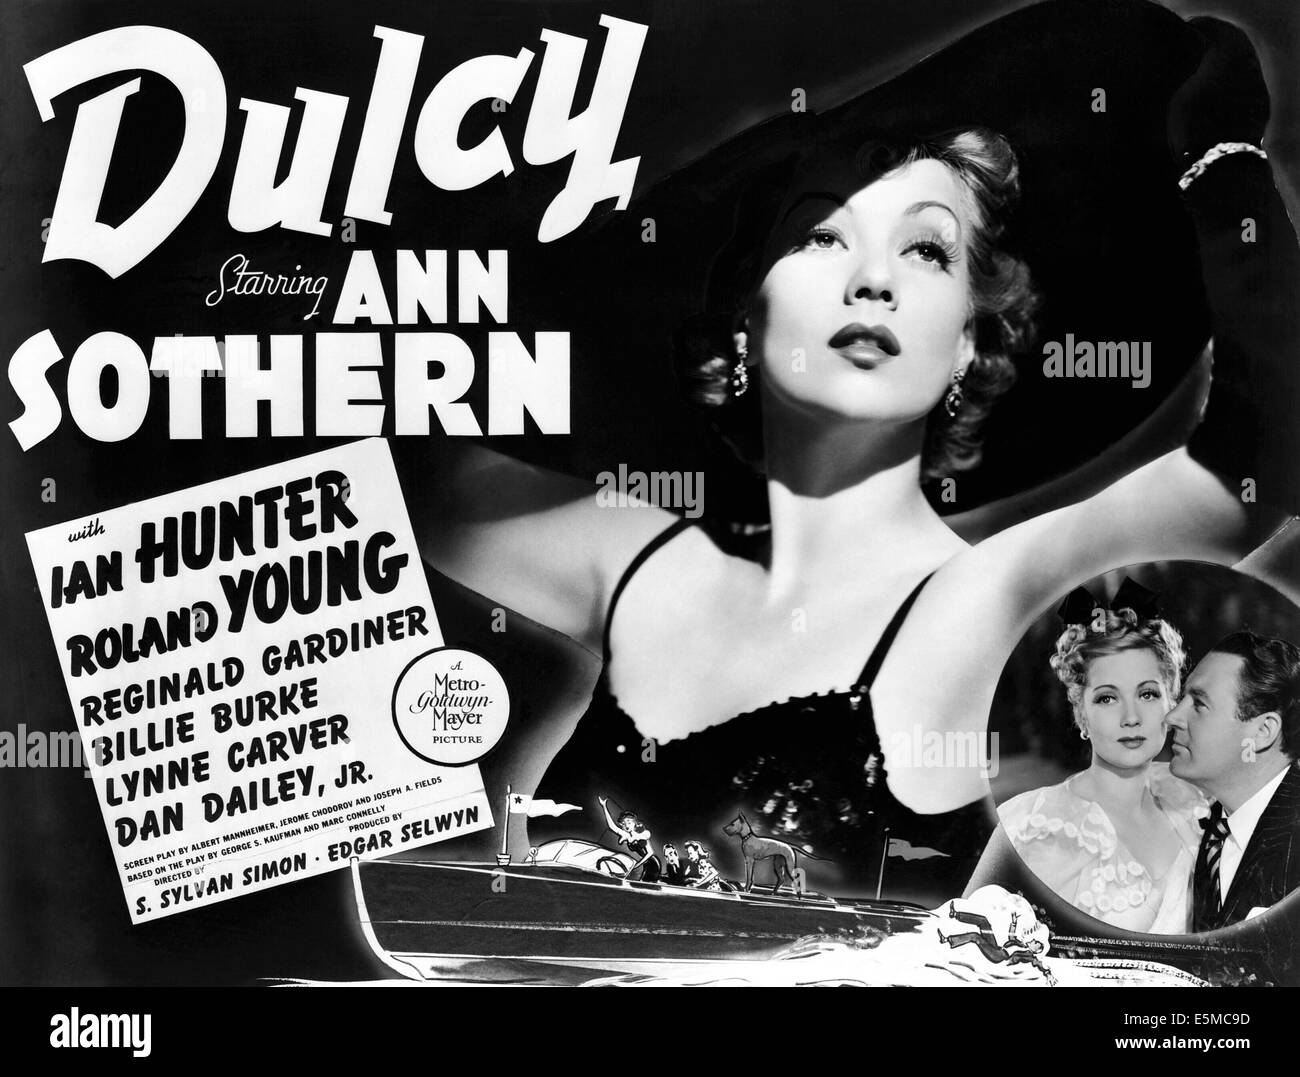 DULCY, Ann Sothern, Ian Hunter, 1940 Foto de stock